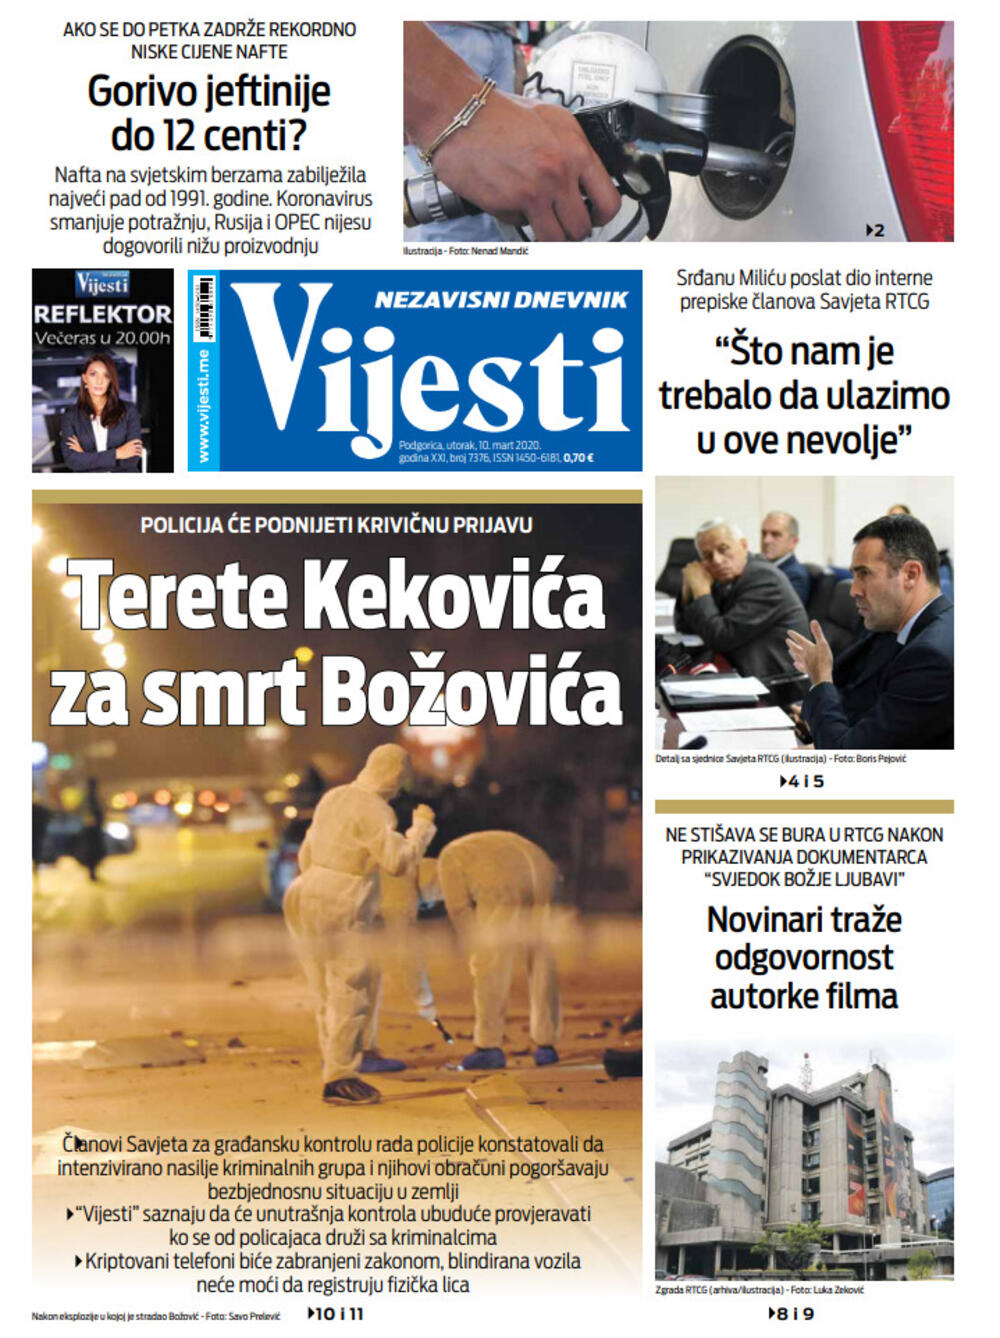 Naslovna strana "Vijesti" za 10. mart, Foto: Vijesti